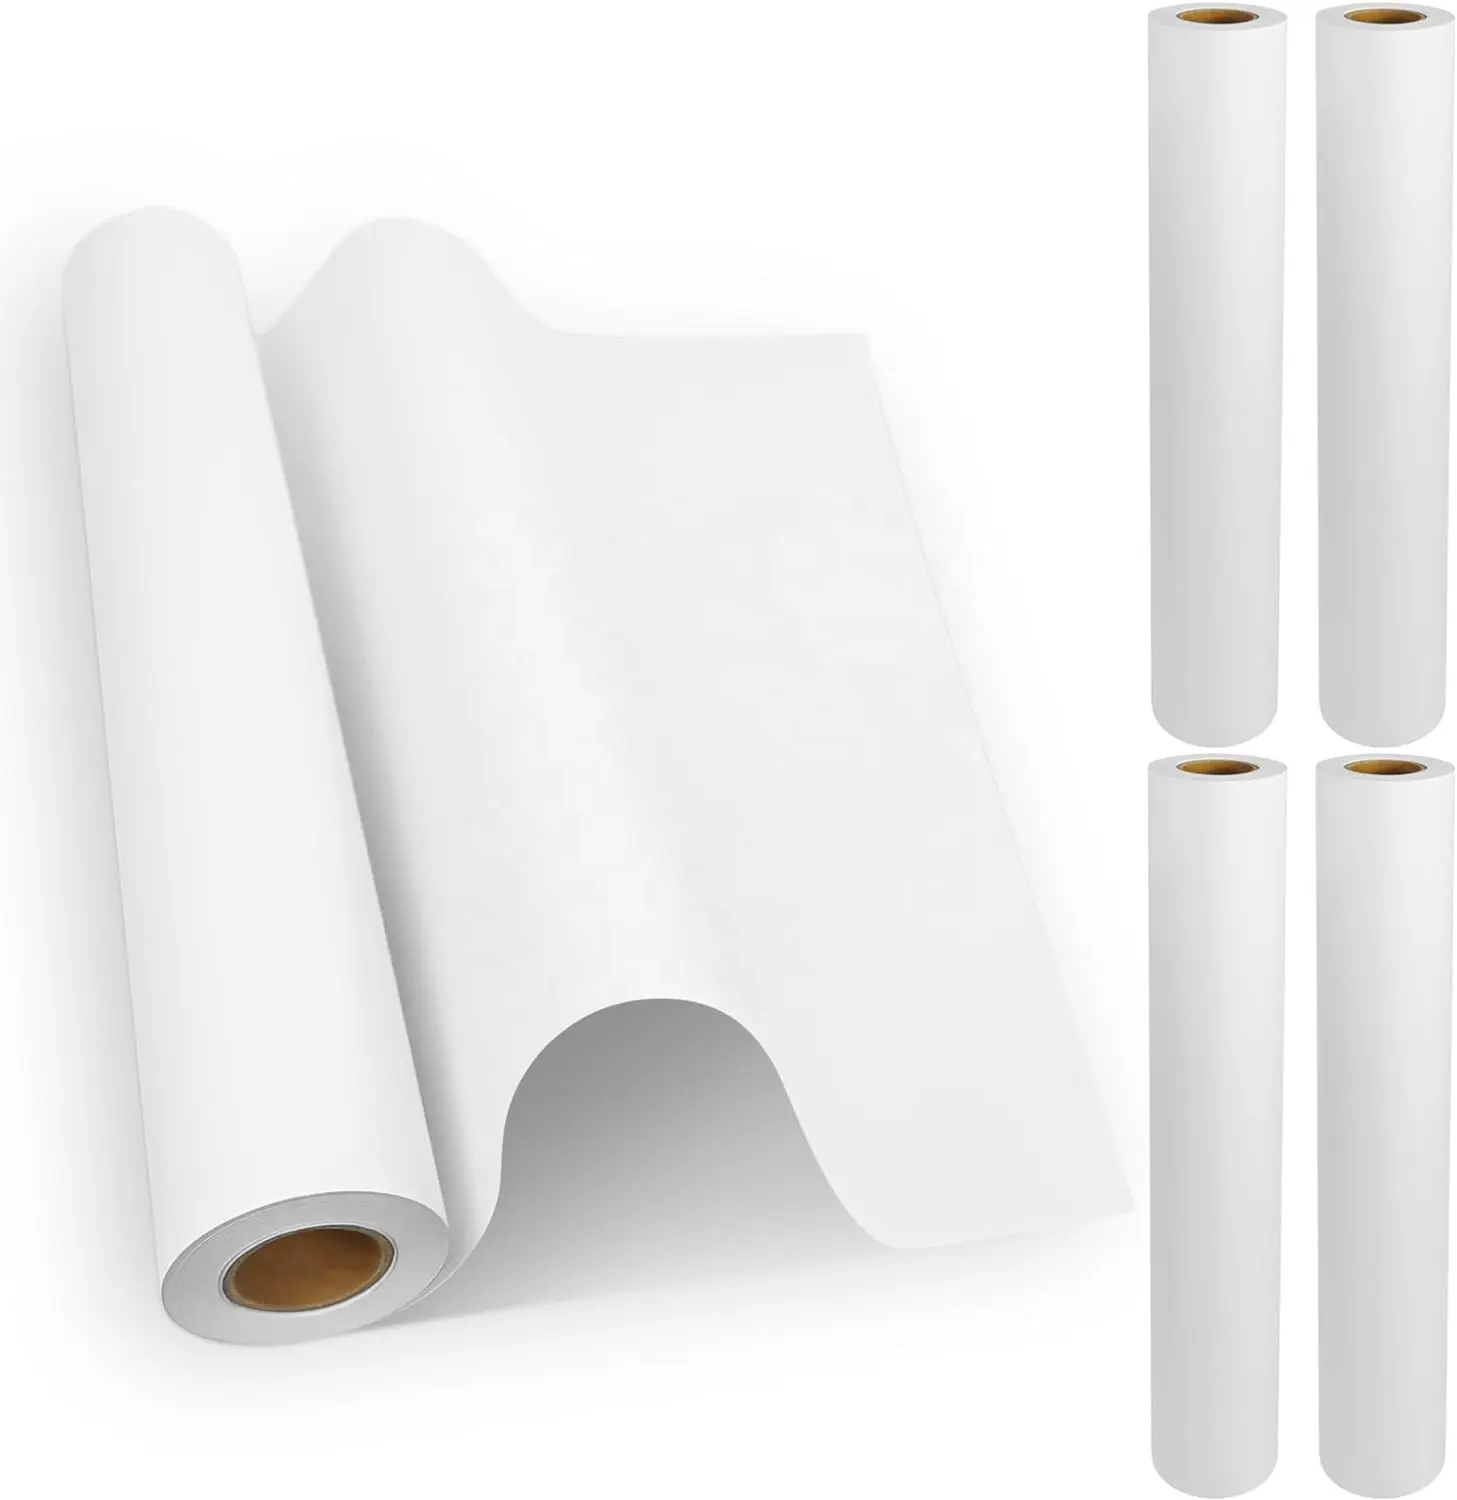 สติกเกอร์แบบมีกาวในตัวกระดาษด้านหลังแบบผ่าและพิมพ์ TC ฐานน้ำกาวแบบหล่อเคลือบหน้ากระดาษหลังสีขาว